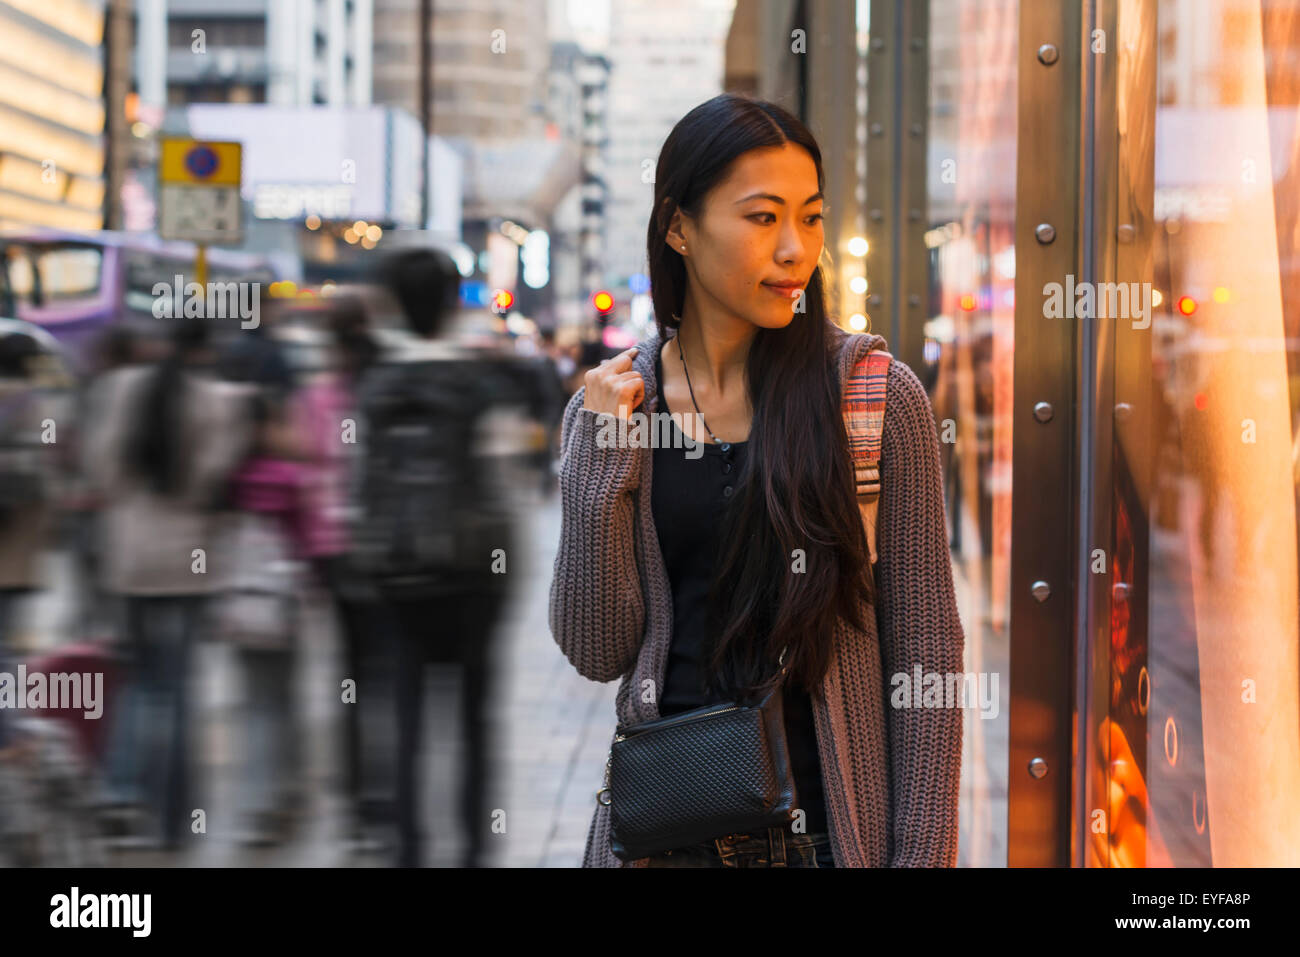 A young woman walking along the street and shops, Kowloon; Hong Kong, China Stock Photo